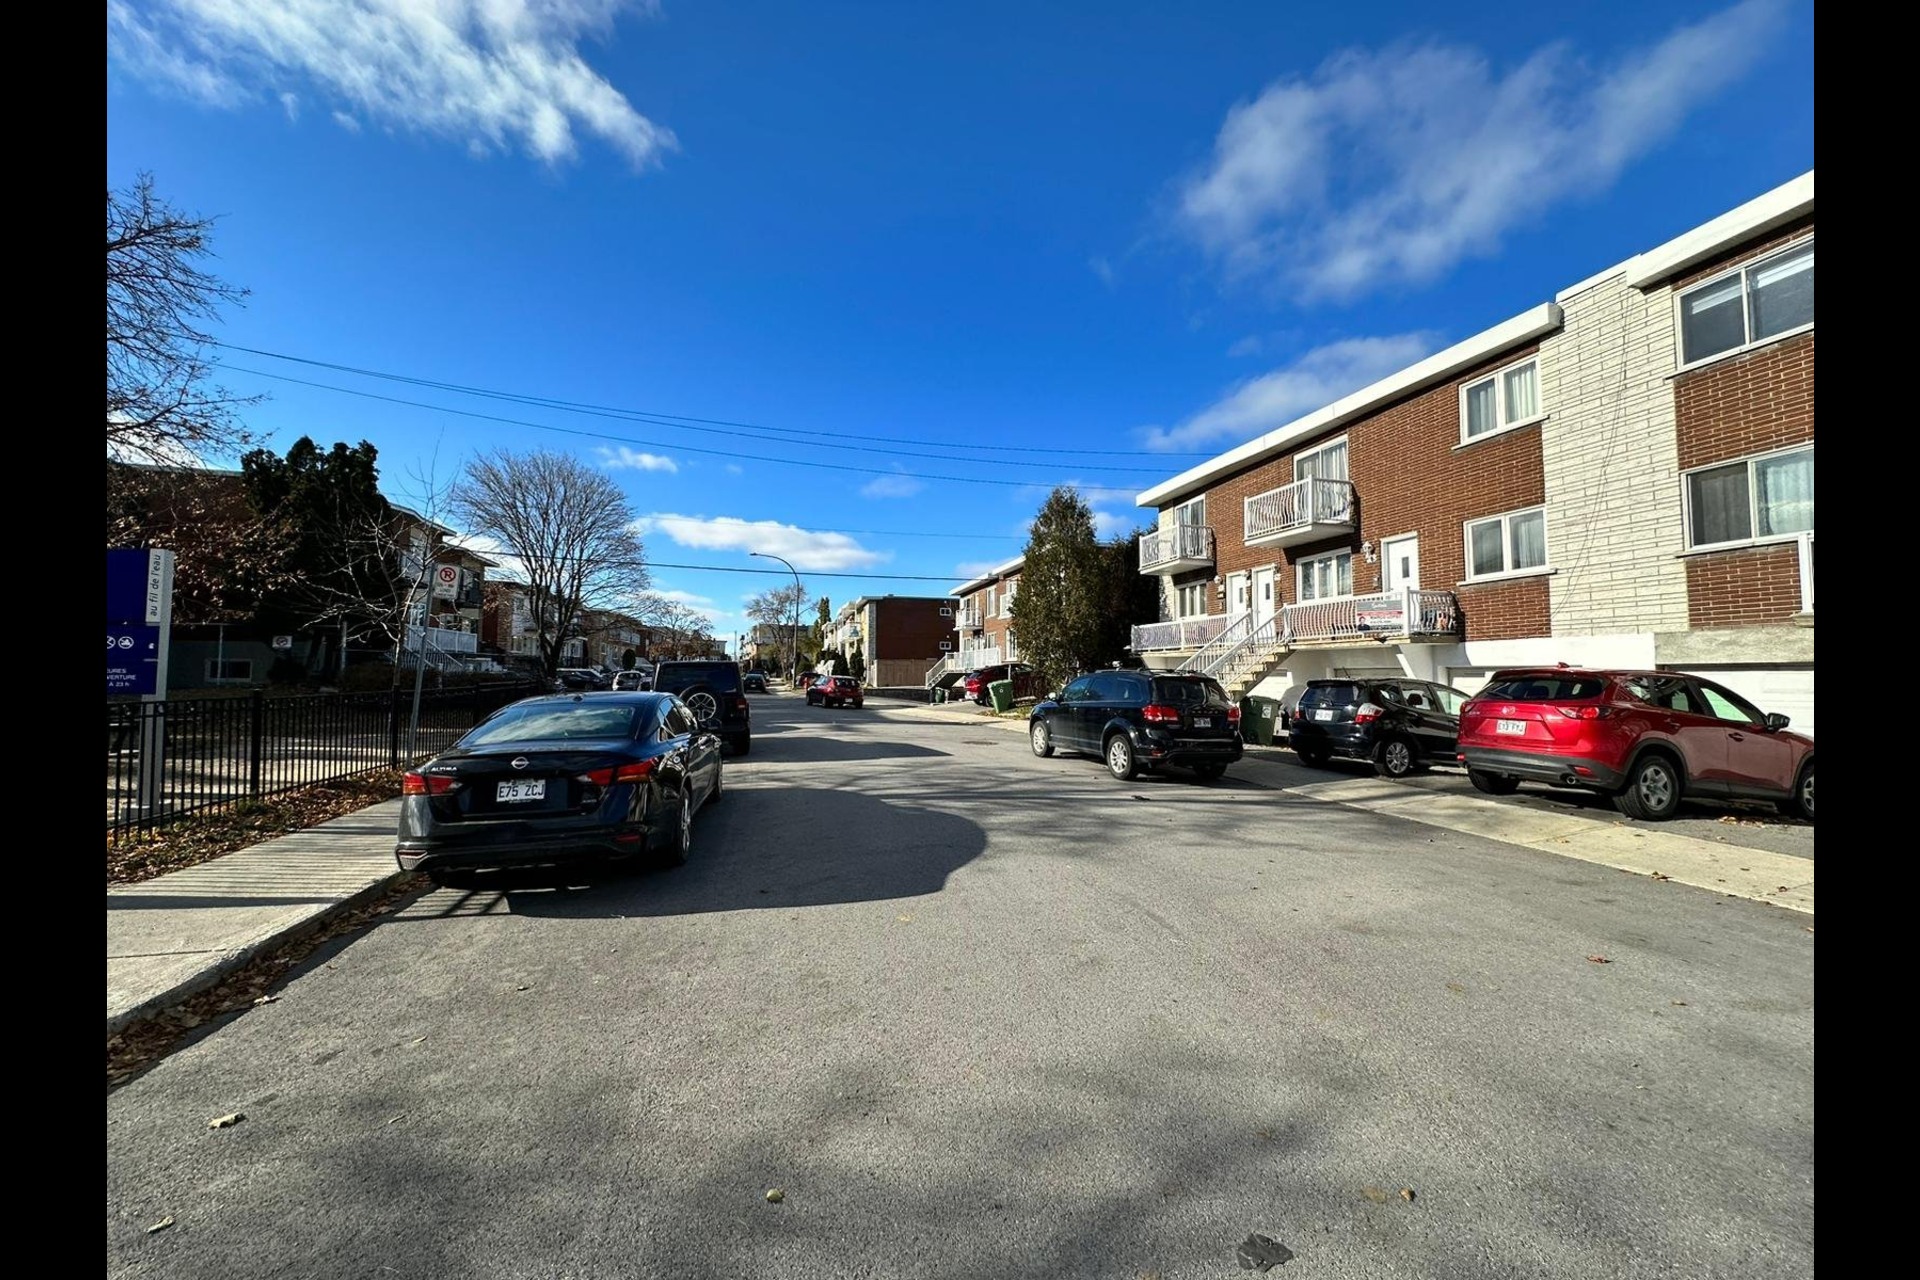 image 22 - Quadruplex En venta Lachine Montréal  - 5 habitaciones